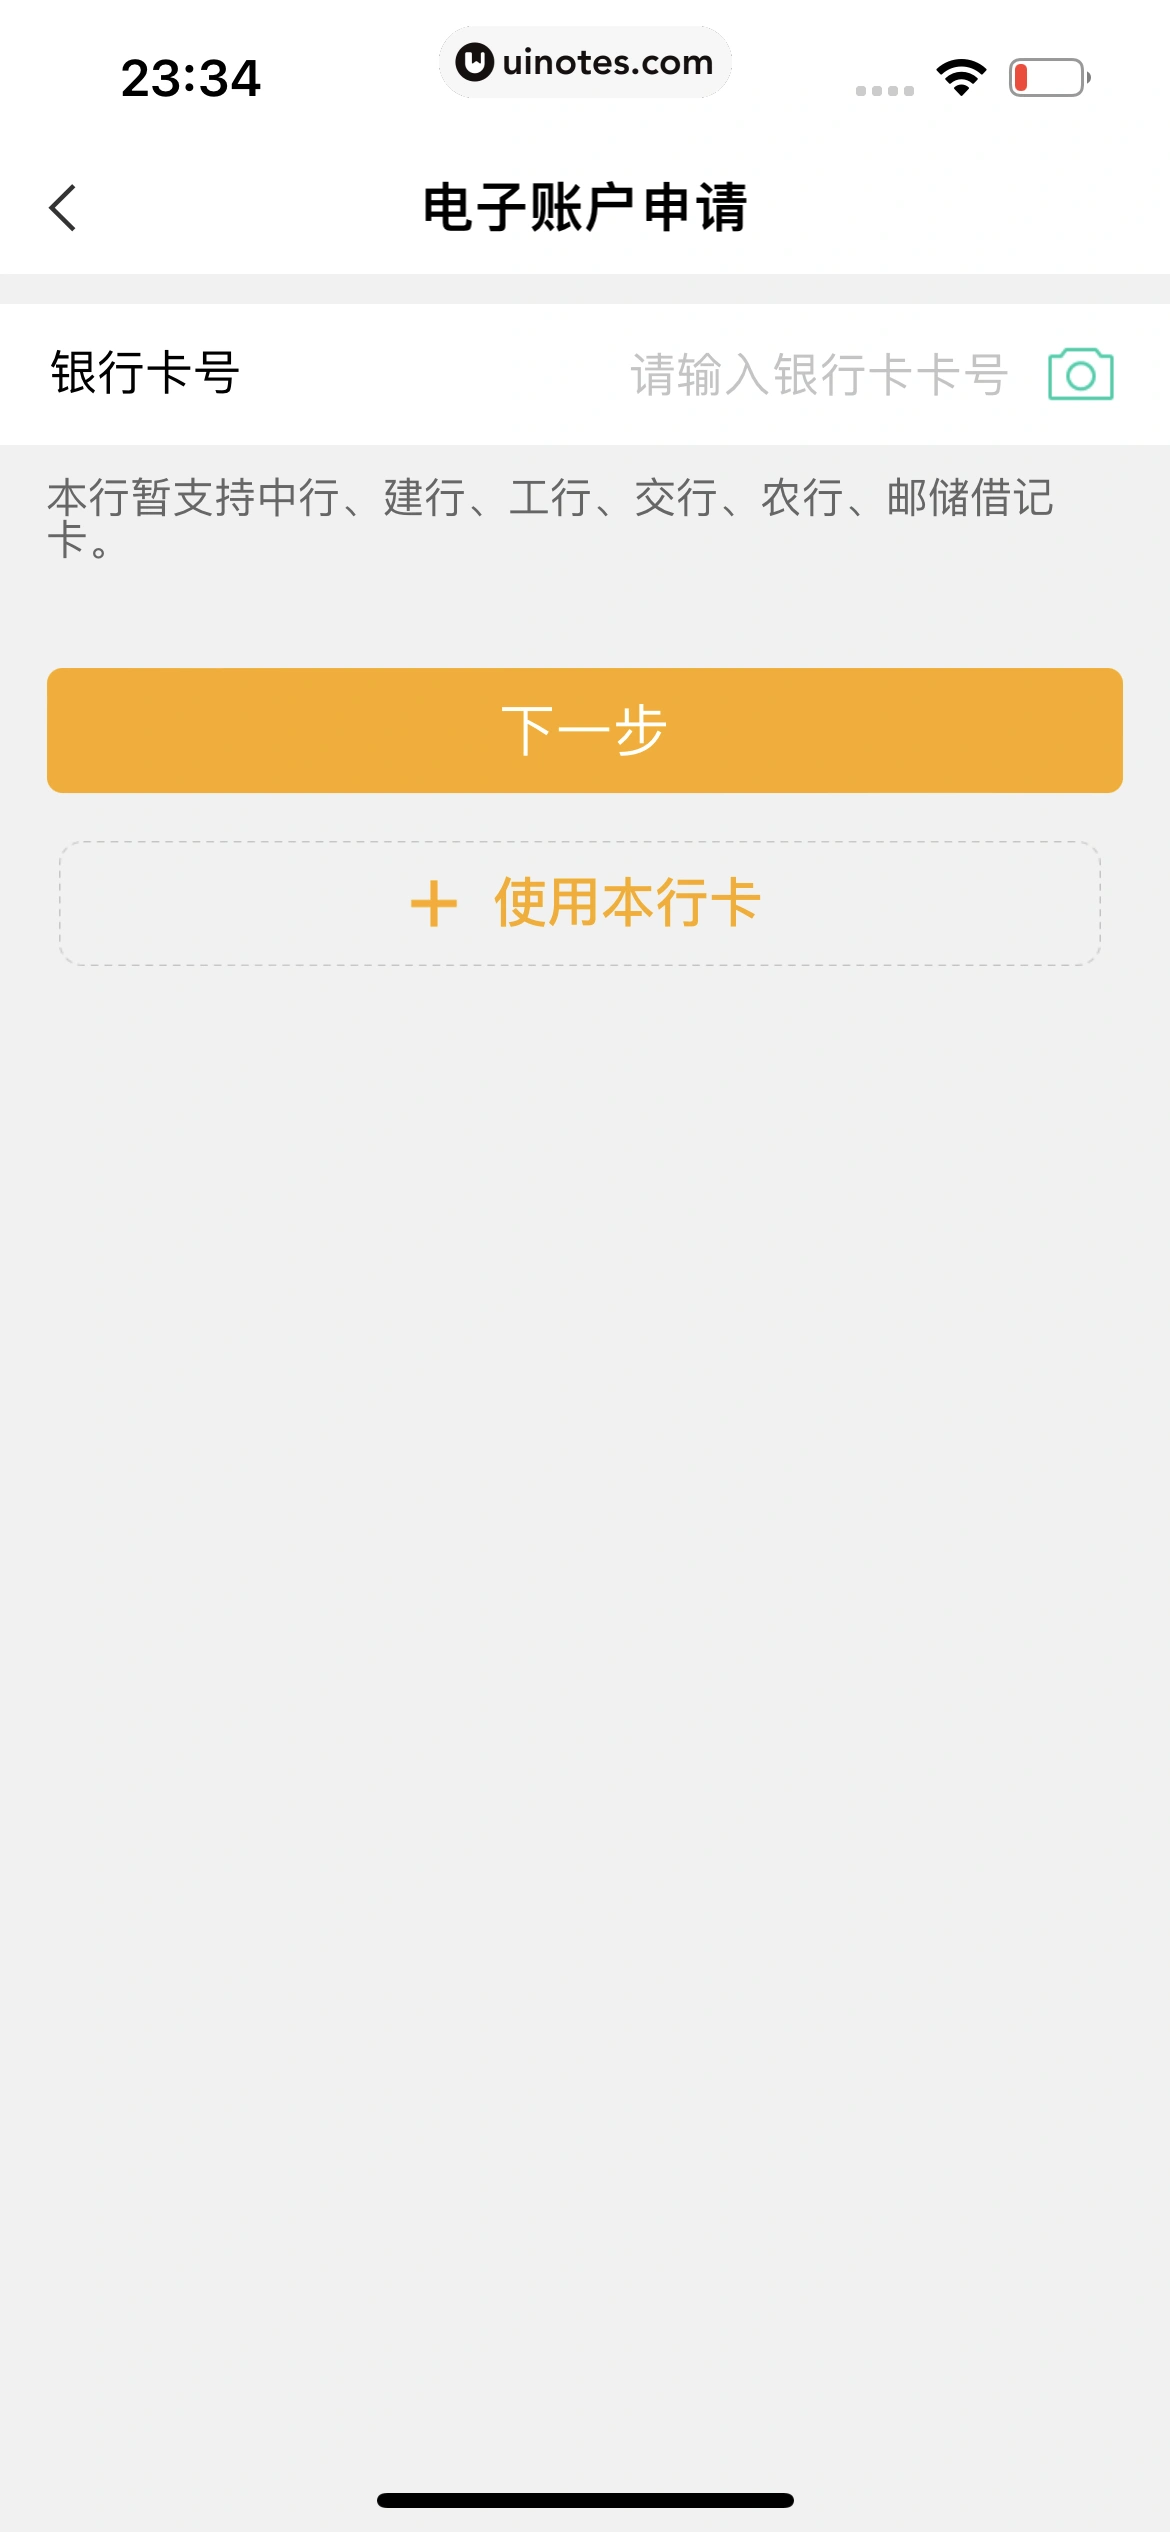 中国农业银行 App 截图 082 - UI Notes